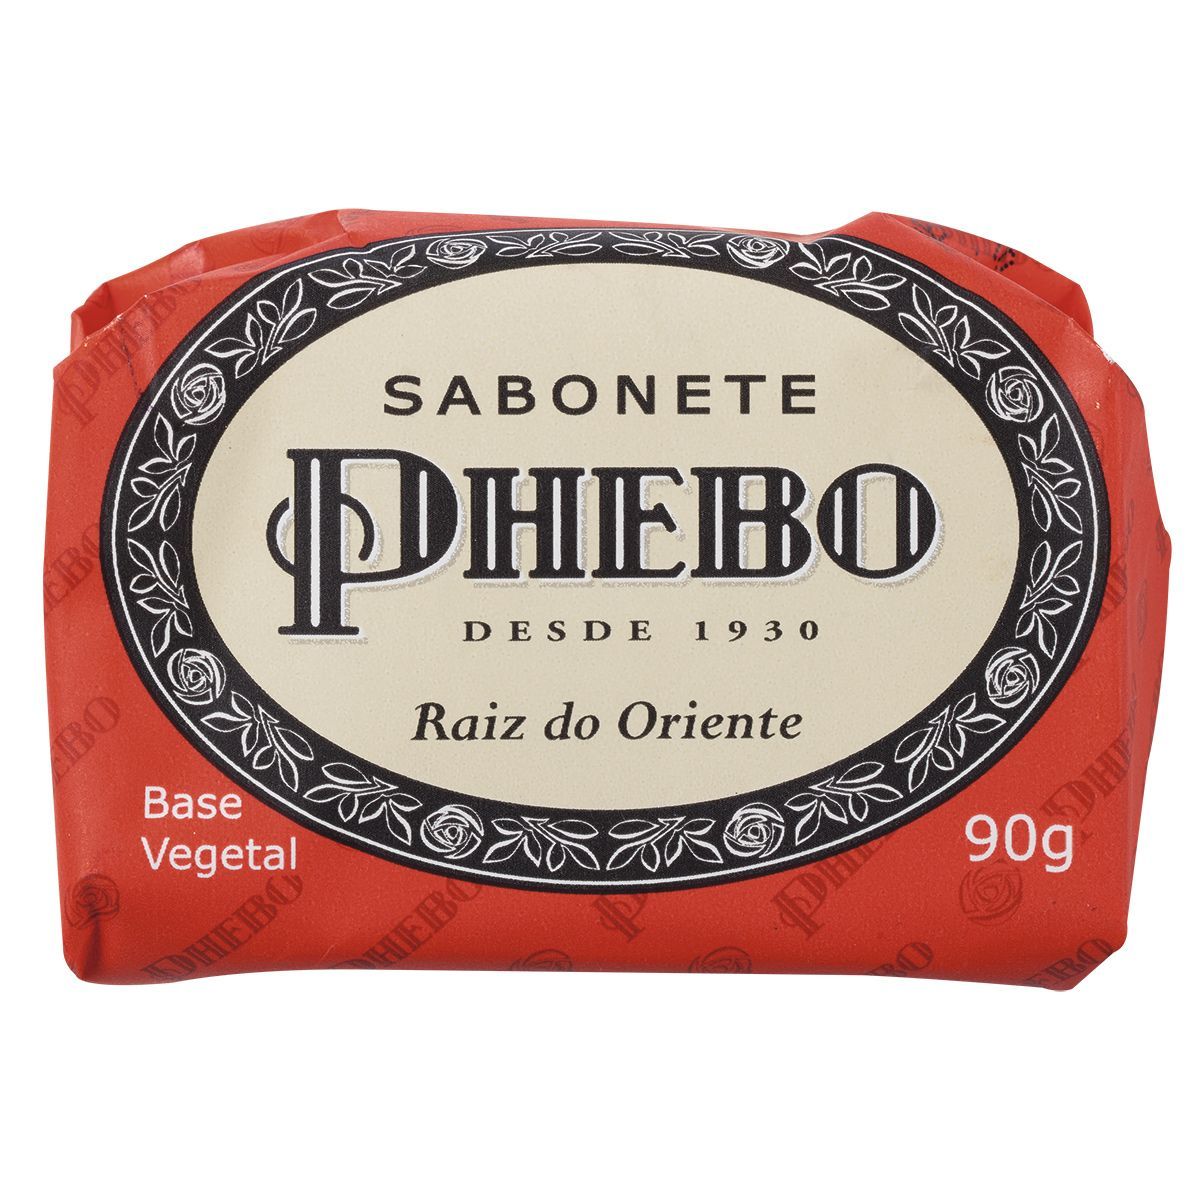 PHEBO Sabonete Sabonete de Glicerina PHEBO Raiz do Oriente 90g